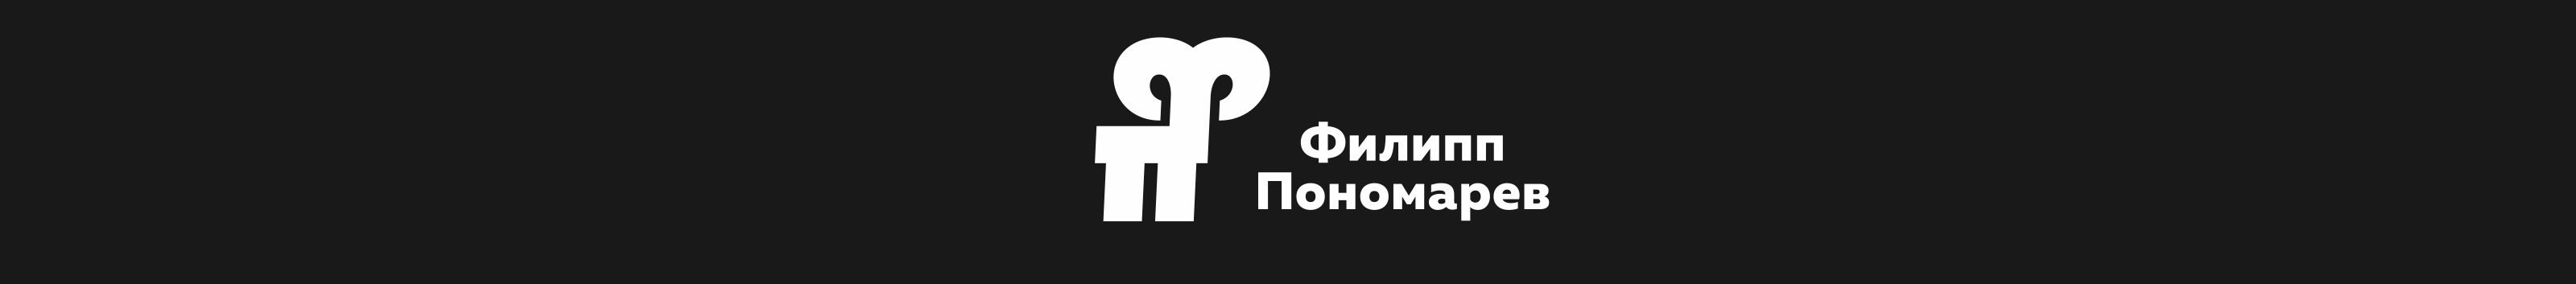 Филипп Пономарев's profile banner